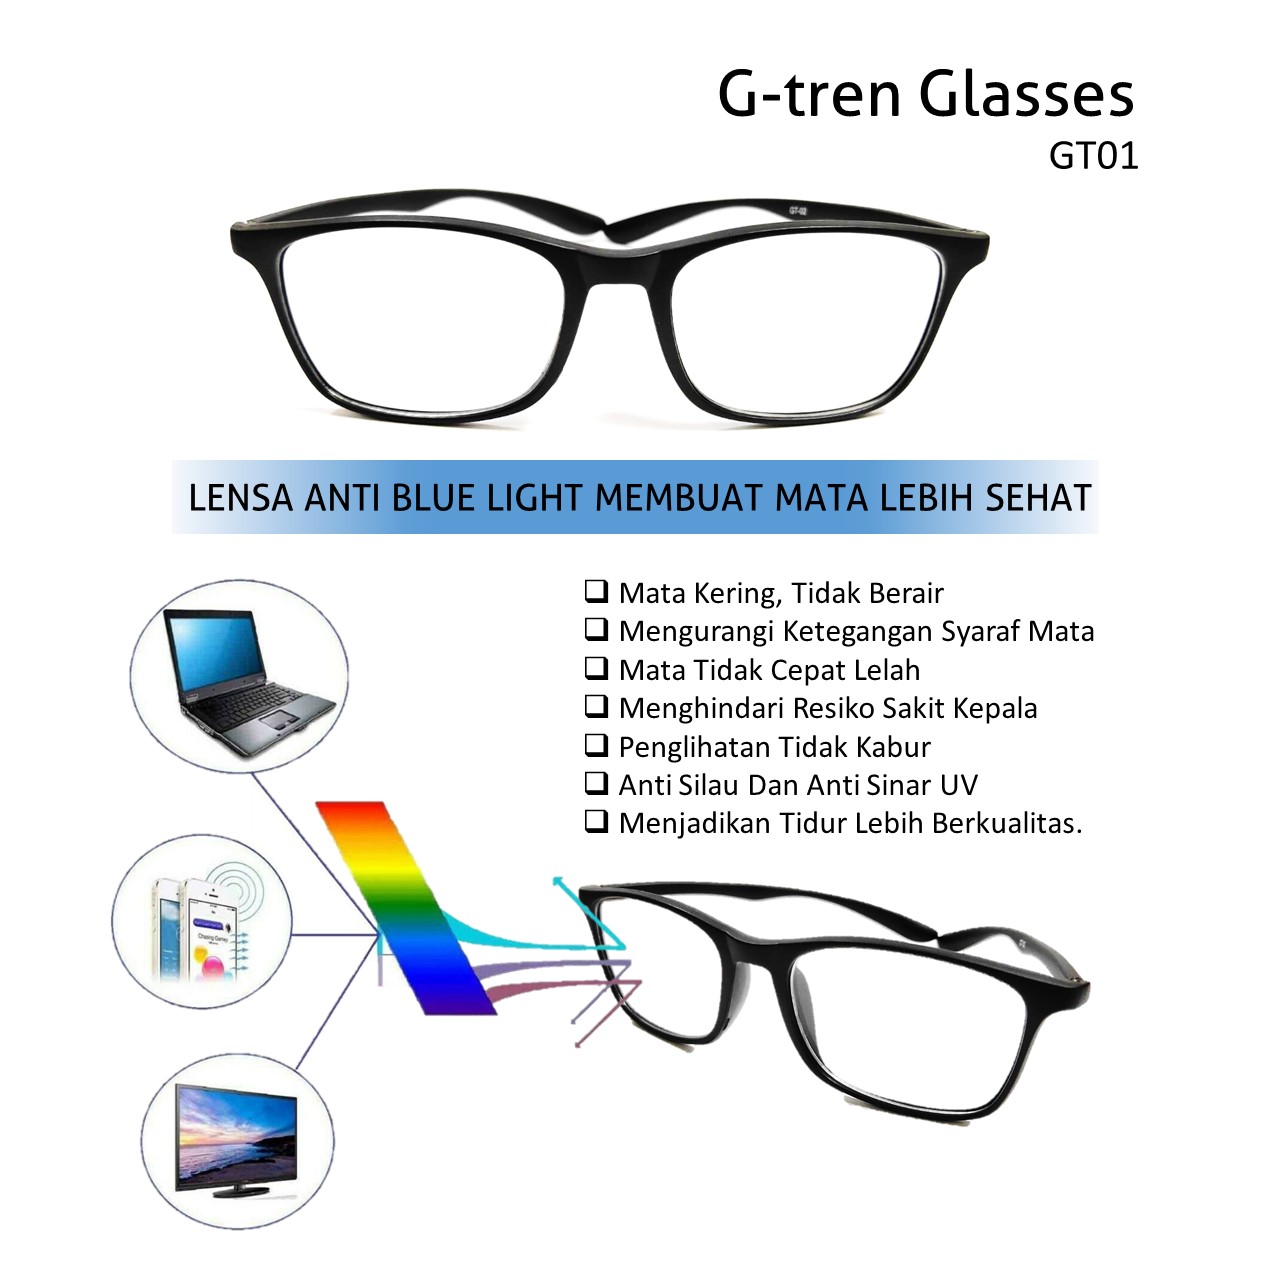 Fungsi Kacamata Anti Radiasi Ini Dapat Menjaga Mata Anda Selamanya - Bisnis Online G-tren